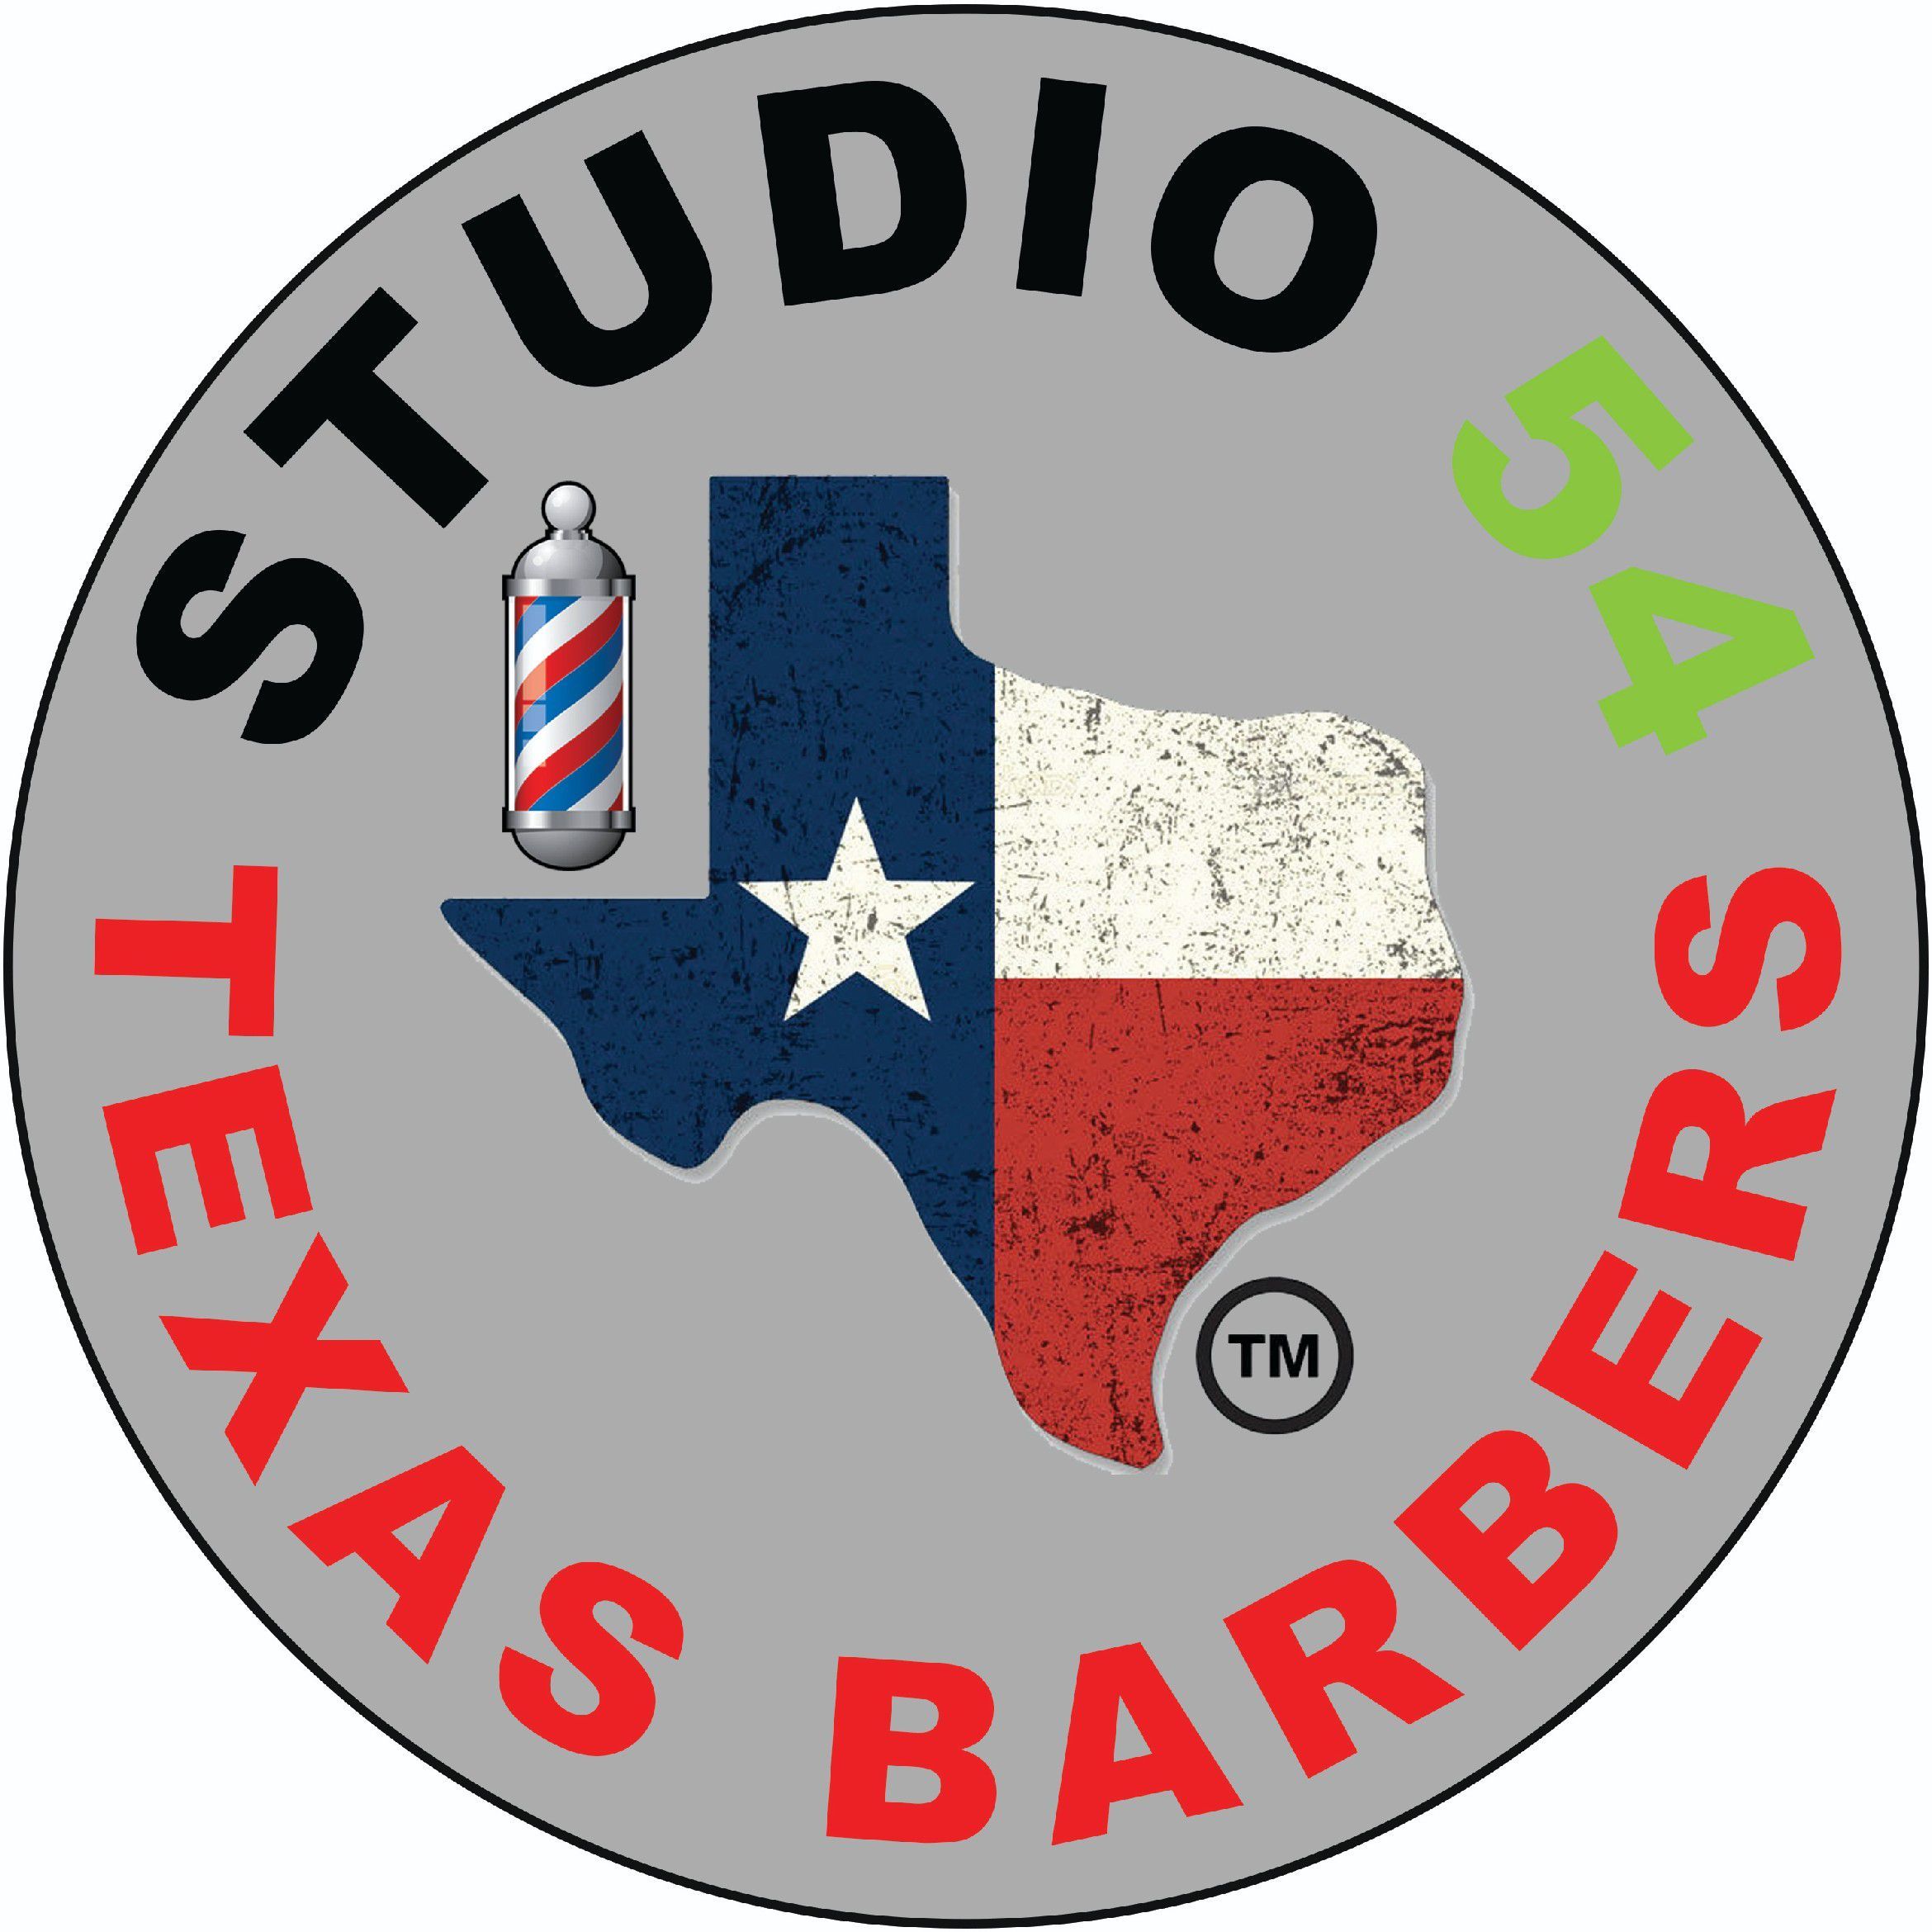 Barber Boudan (Studio 54), 858 Belt Line Road, Garland, 75040